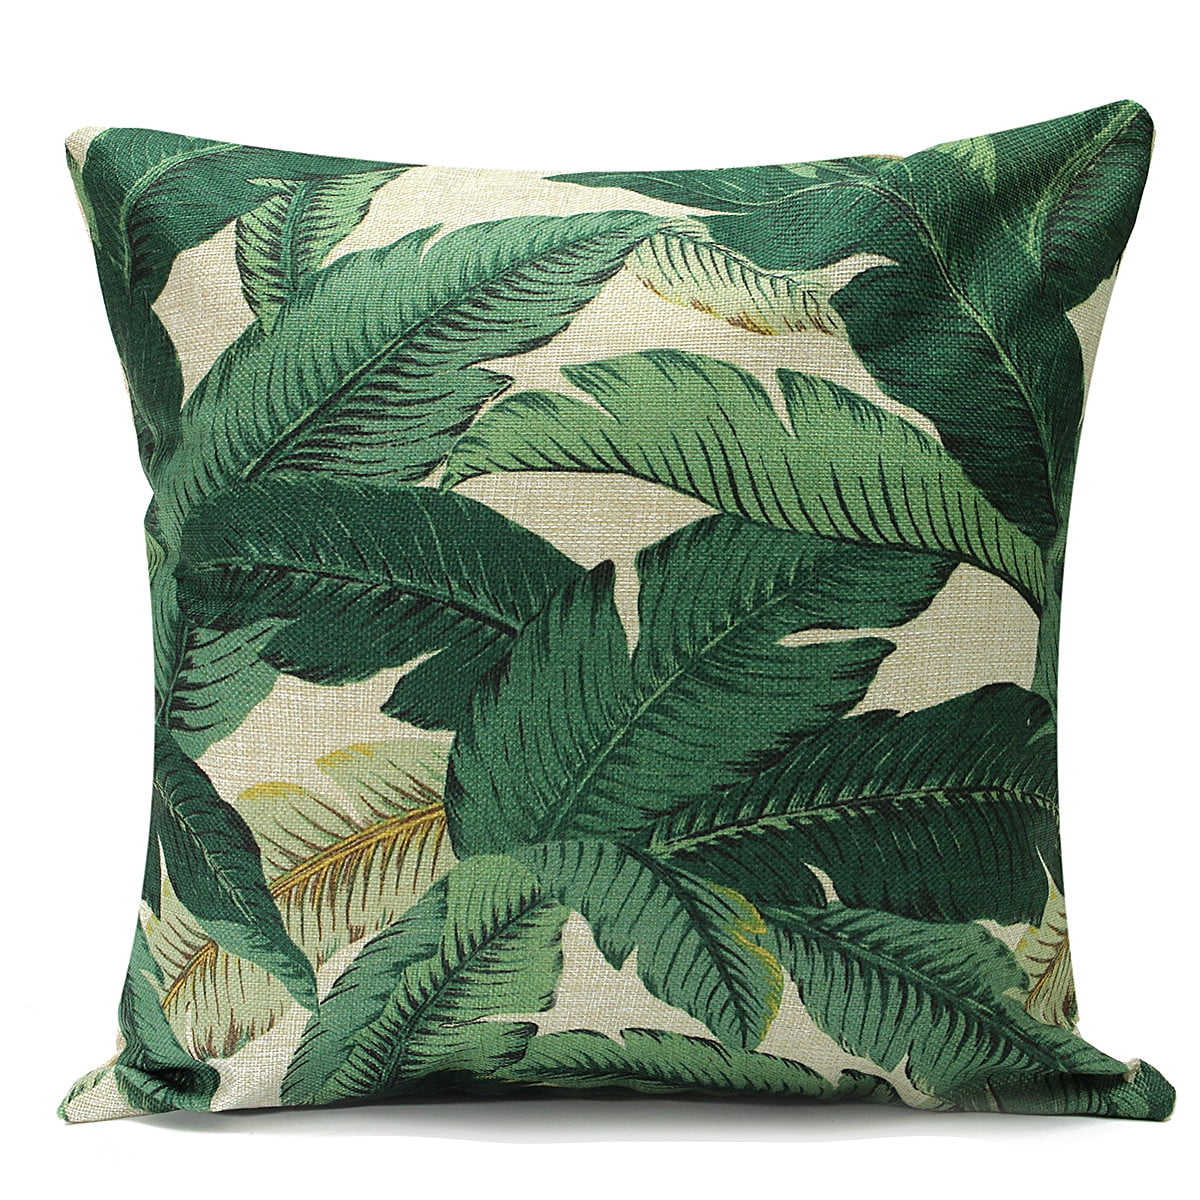 18" Tropical Green Leaves Sofa Cushion Cover Throw Pillow Case Home Garden Decor 